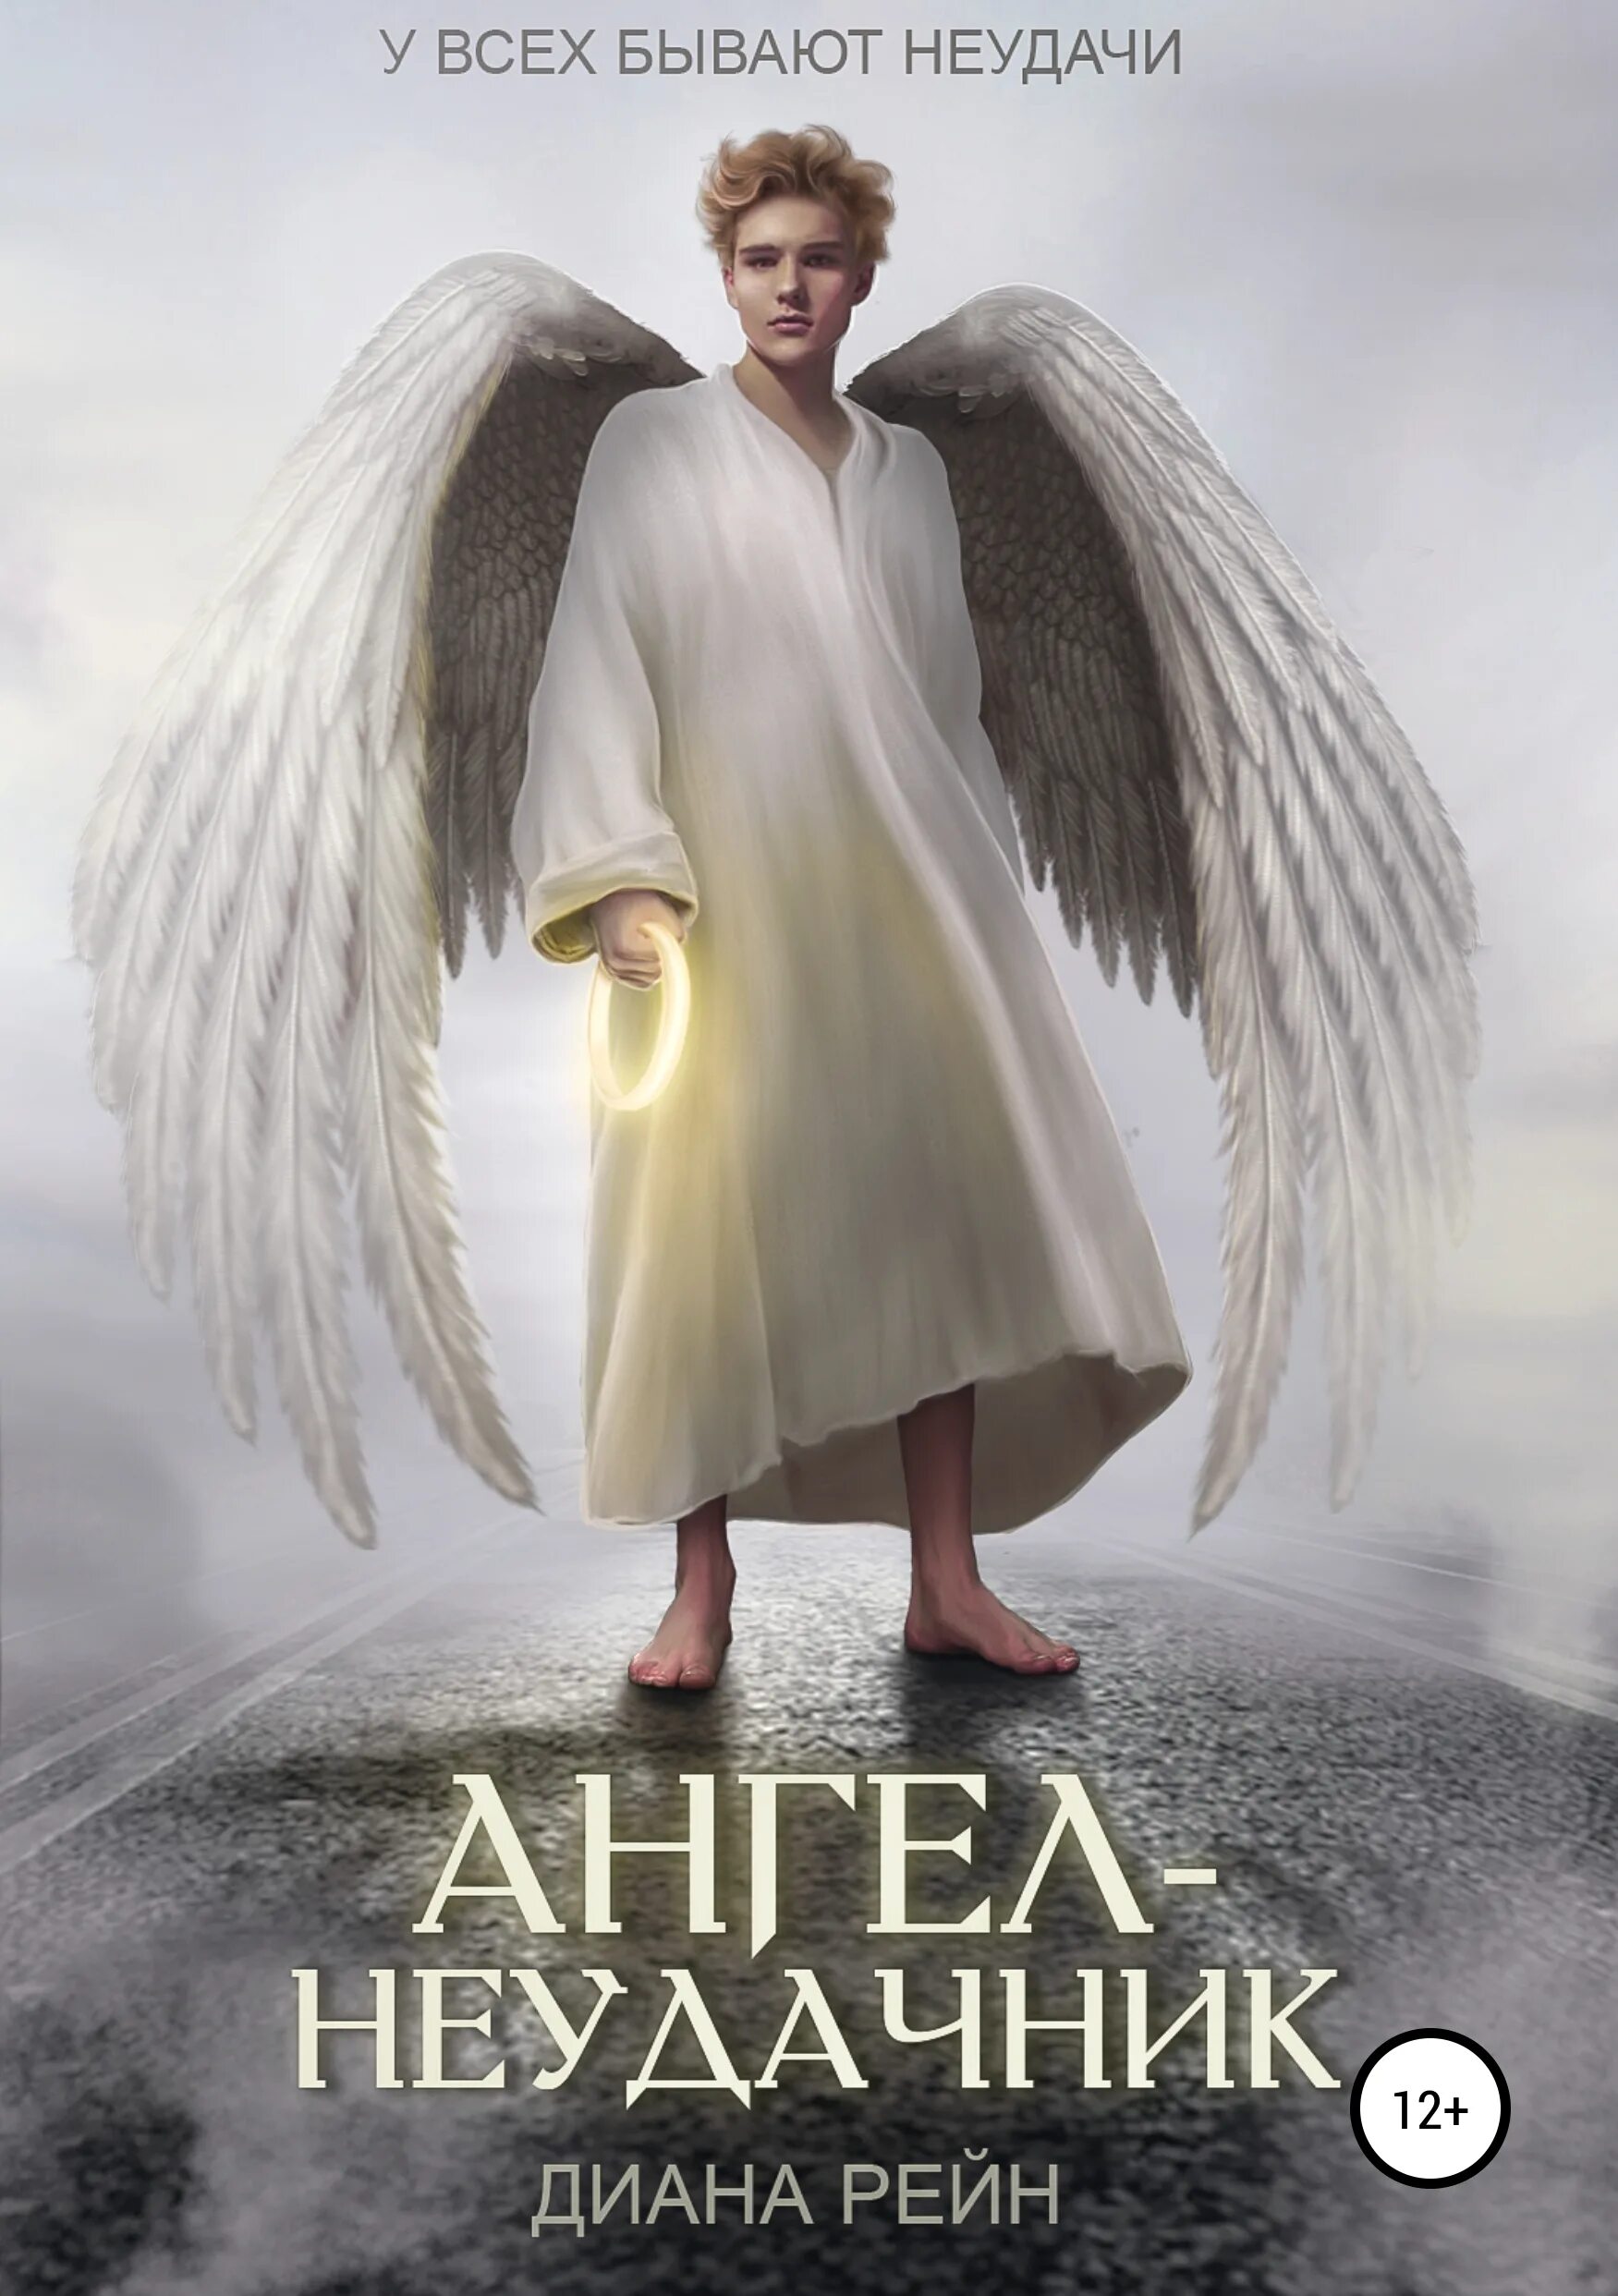 Книга ангелов. Ангел с книгой. Ангел неудачник обложка книги. Книга про ангела. Автор книги ангел